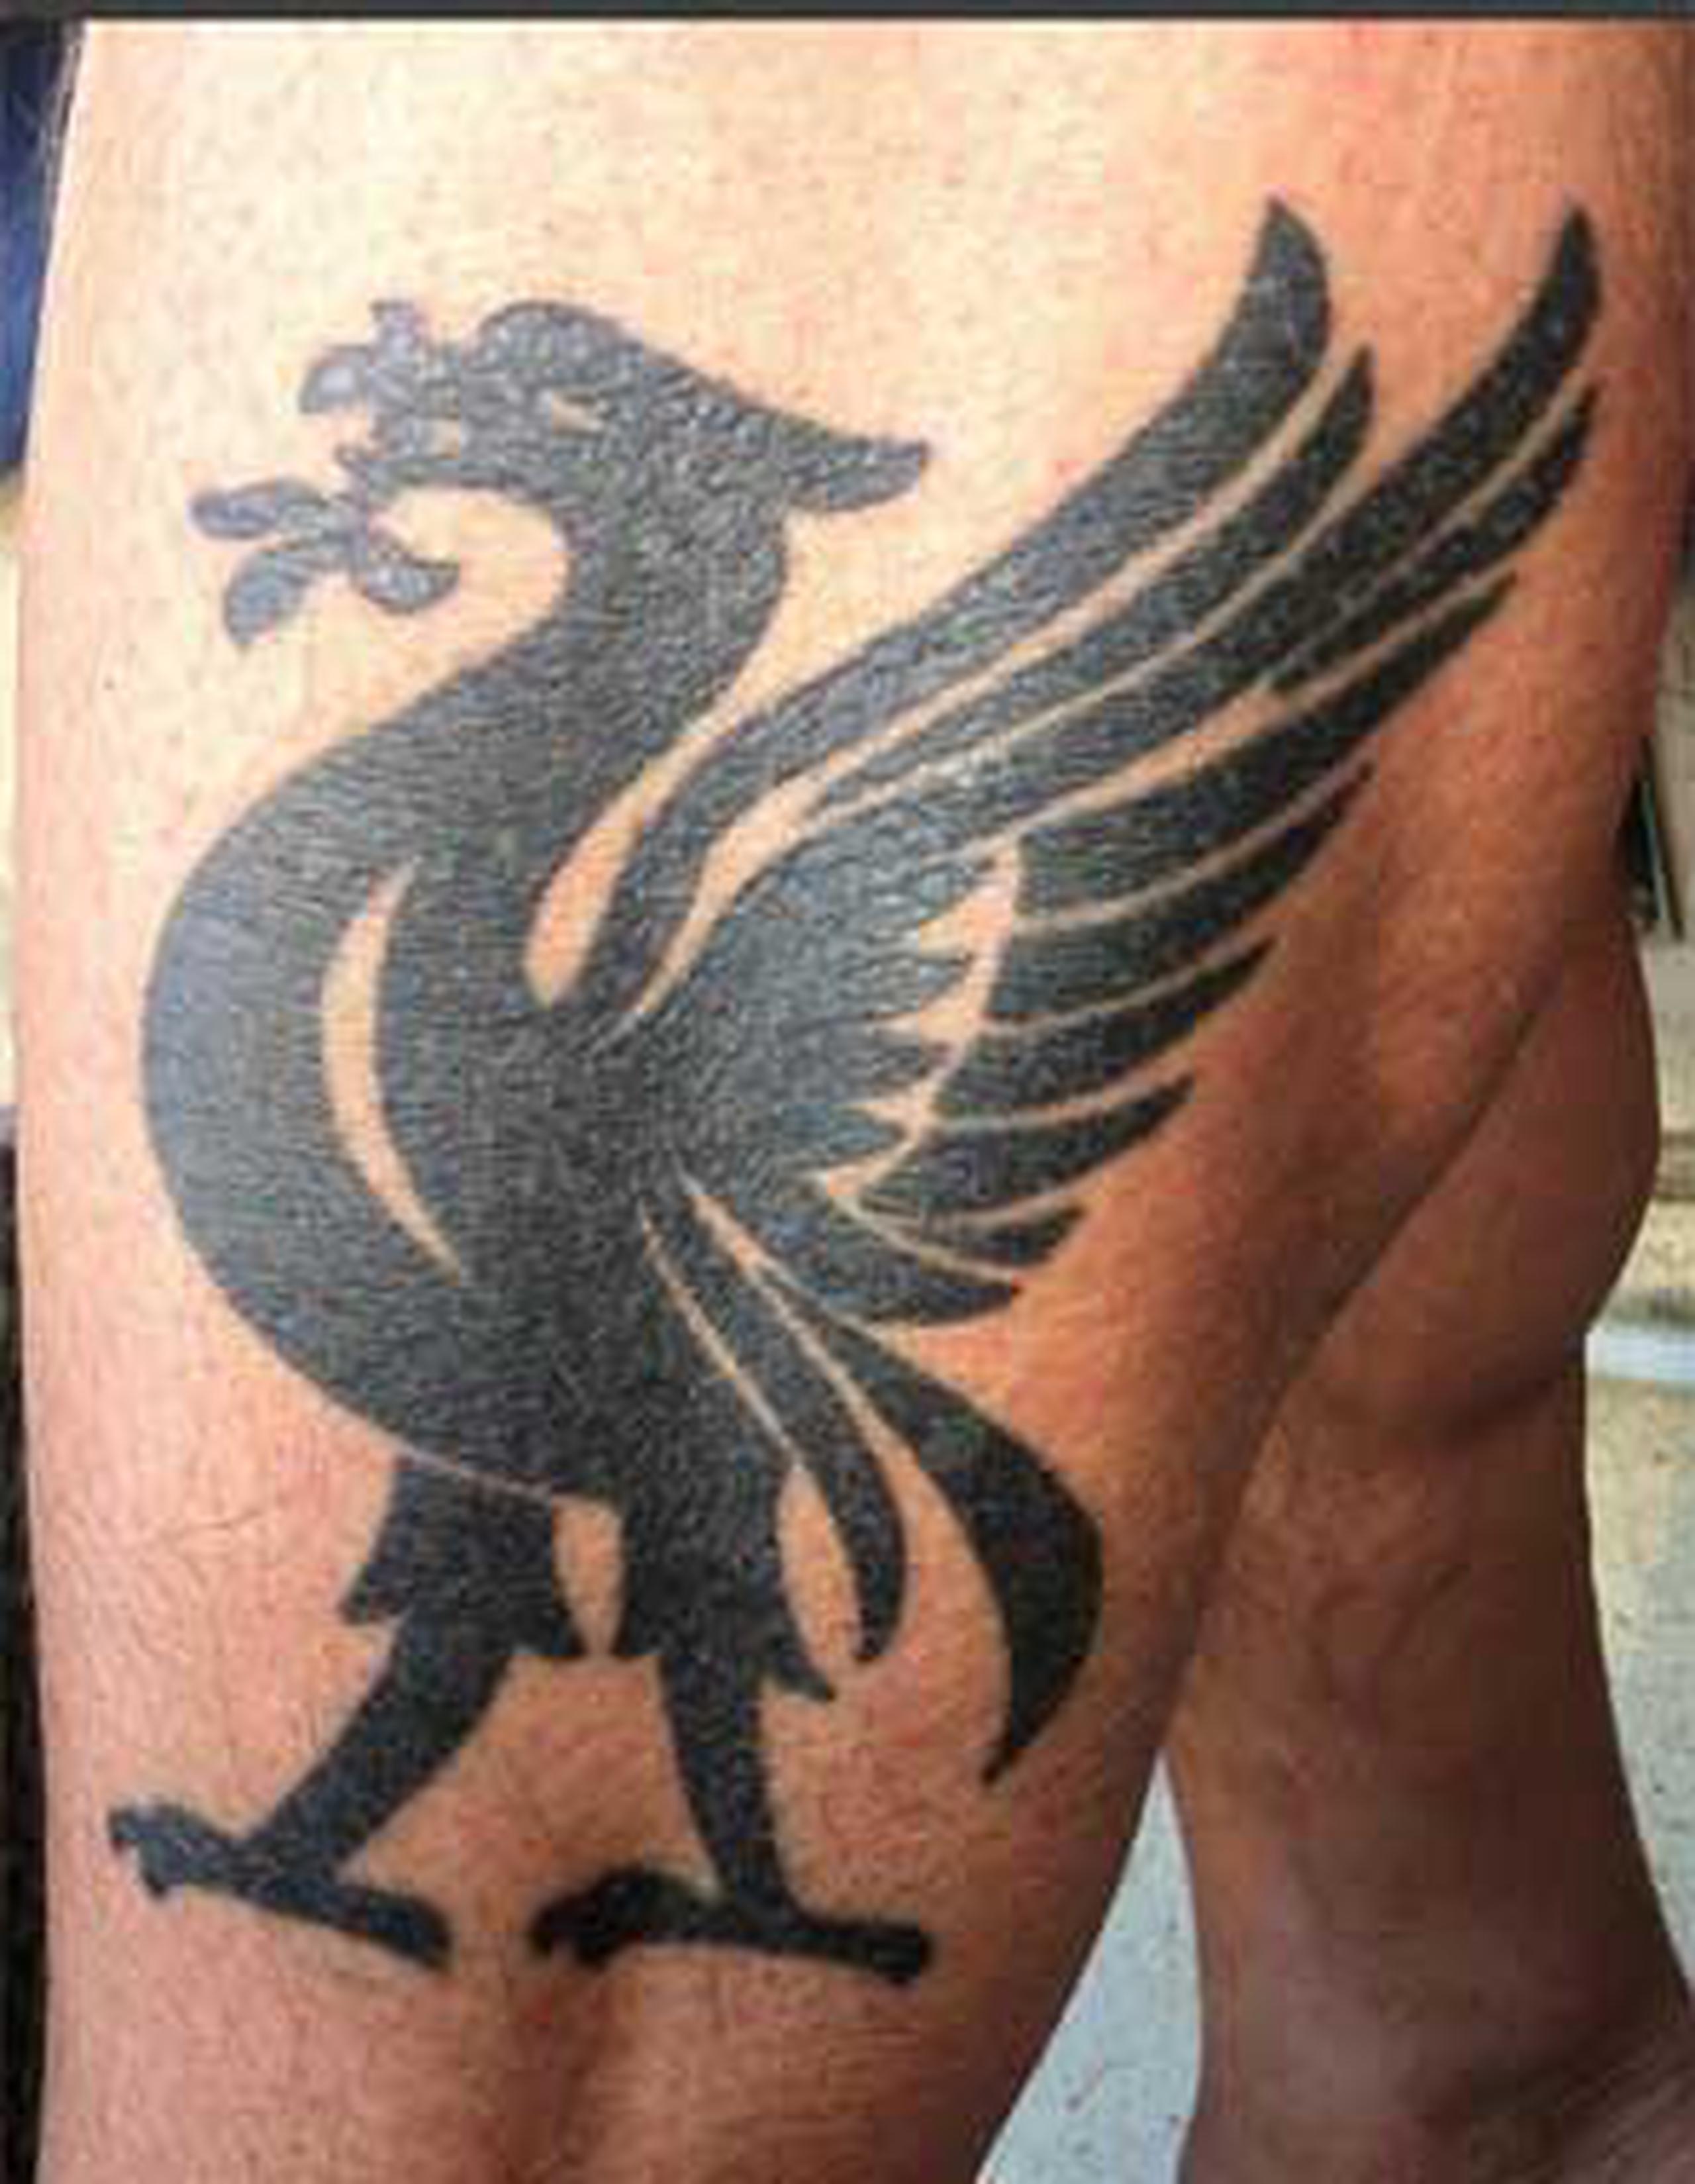 Lars Ohly, ex dirigente del Partido Sueco de la Izquierda, dejó ver sus genitales mientras mostraba otro ángulo de su tatuaje de la mascota del equipo de fútbol Liverpool .  (Twitter/Lars Ohly)